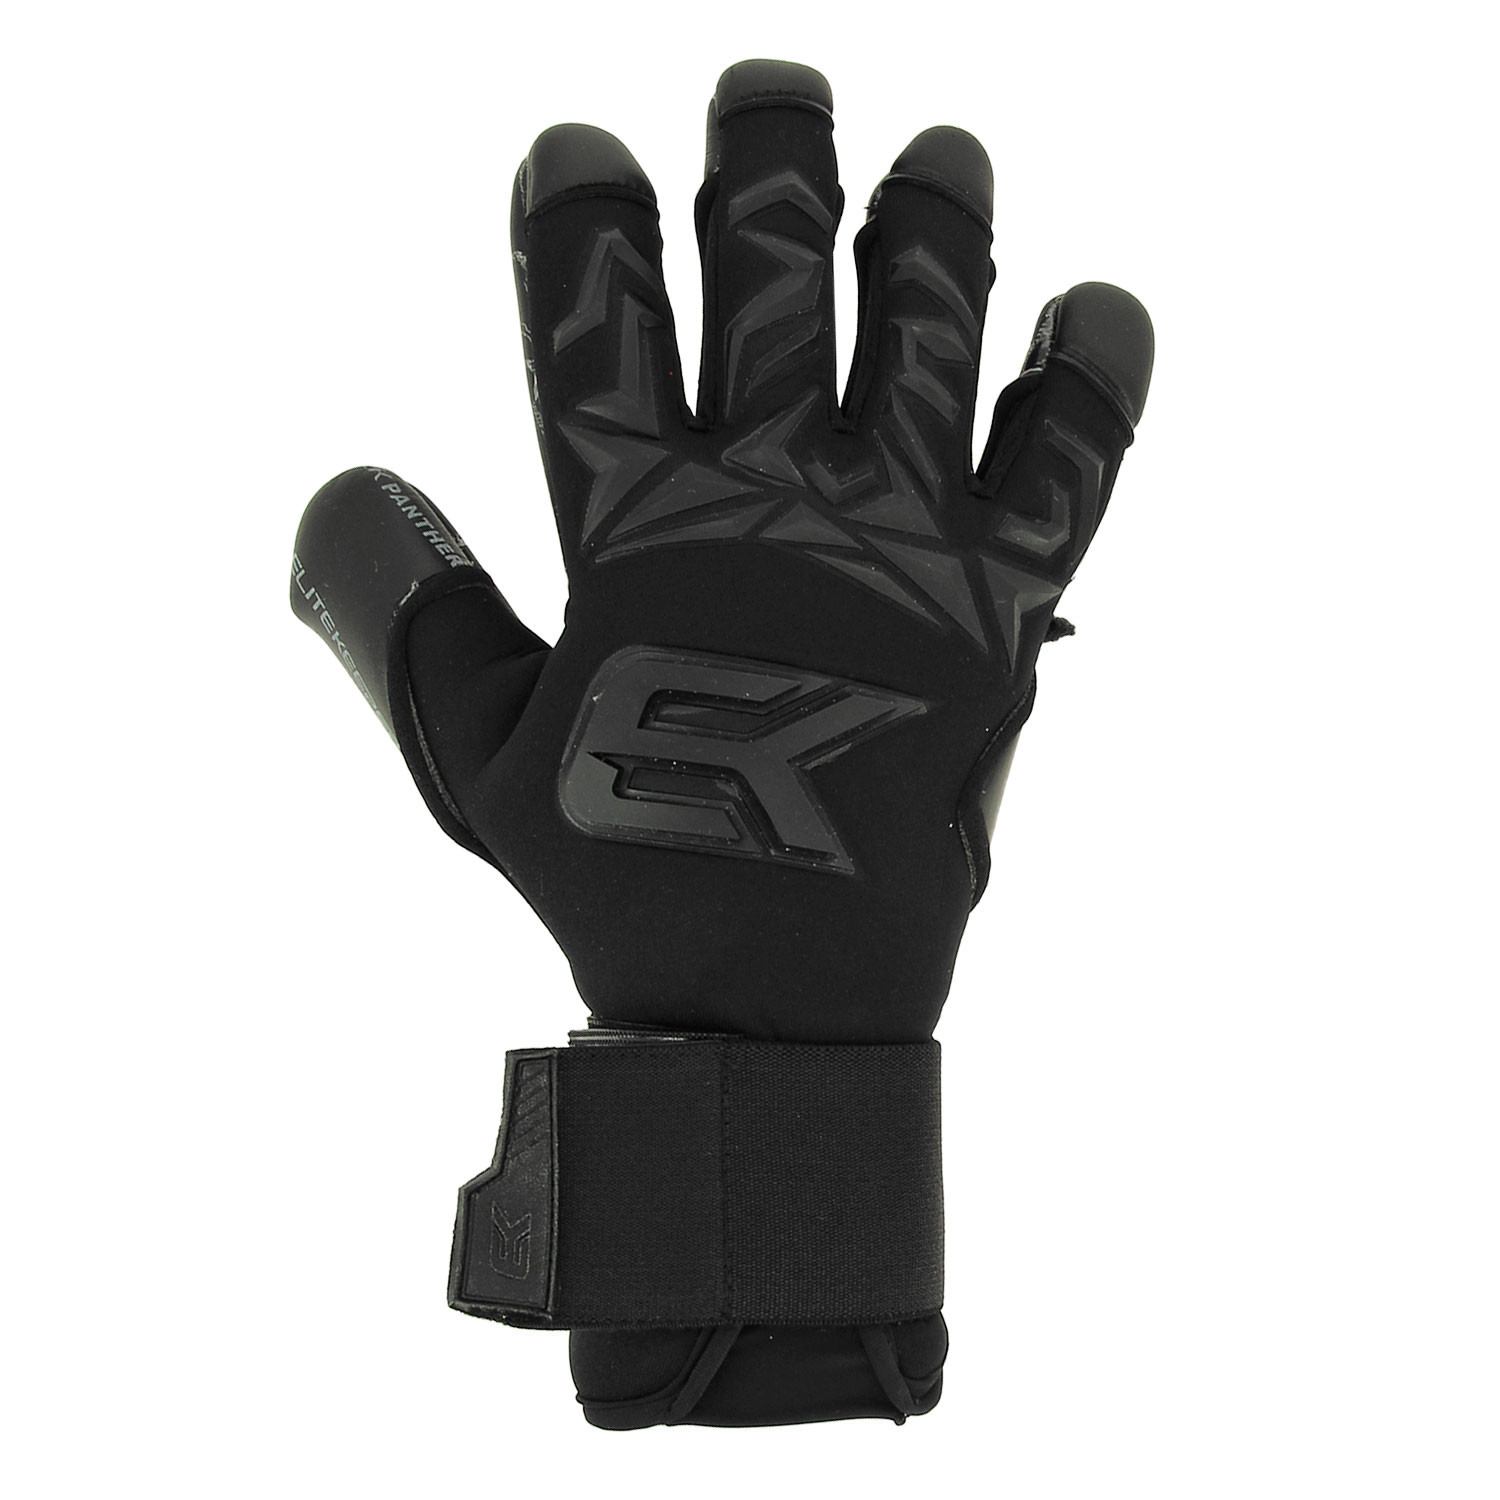 Comprar guantes de portero online al mejor precio ® Elitekeepers